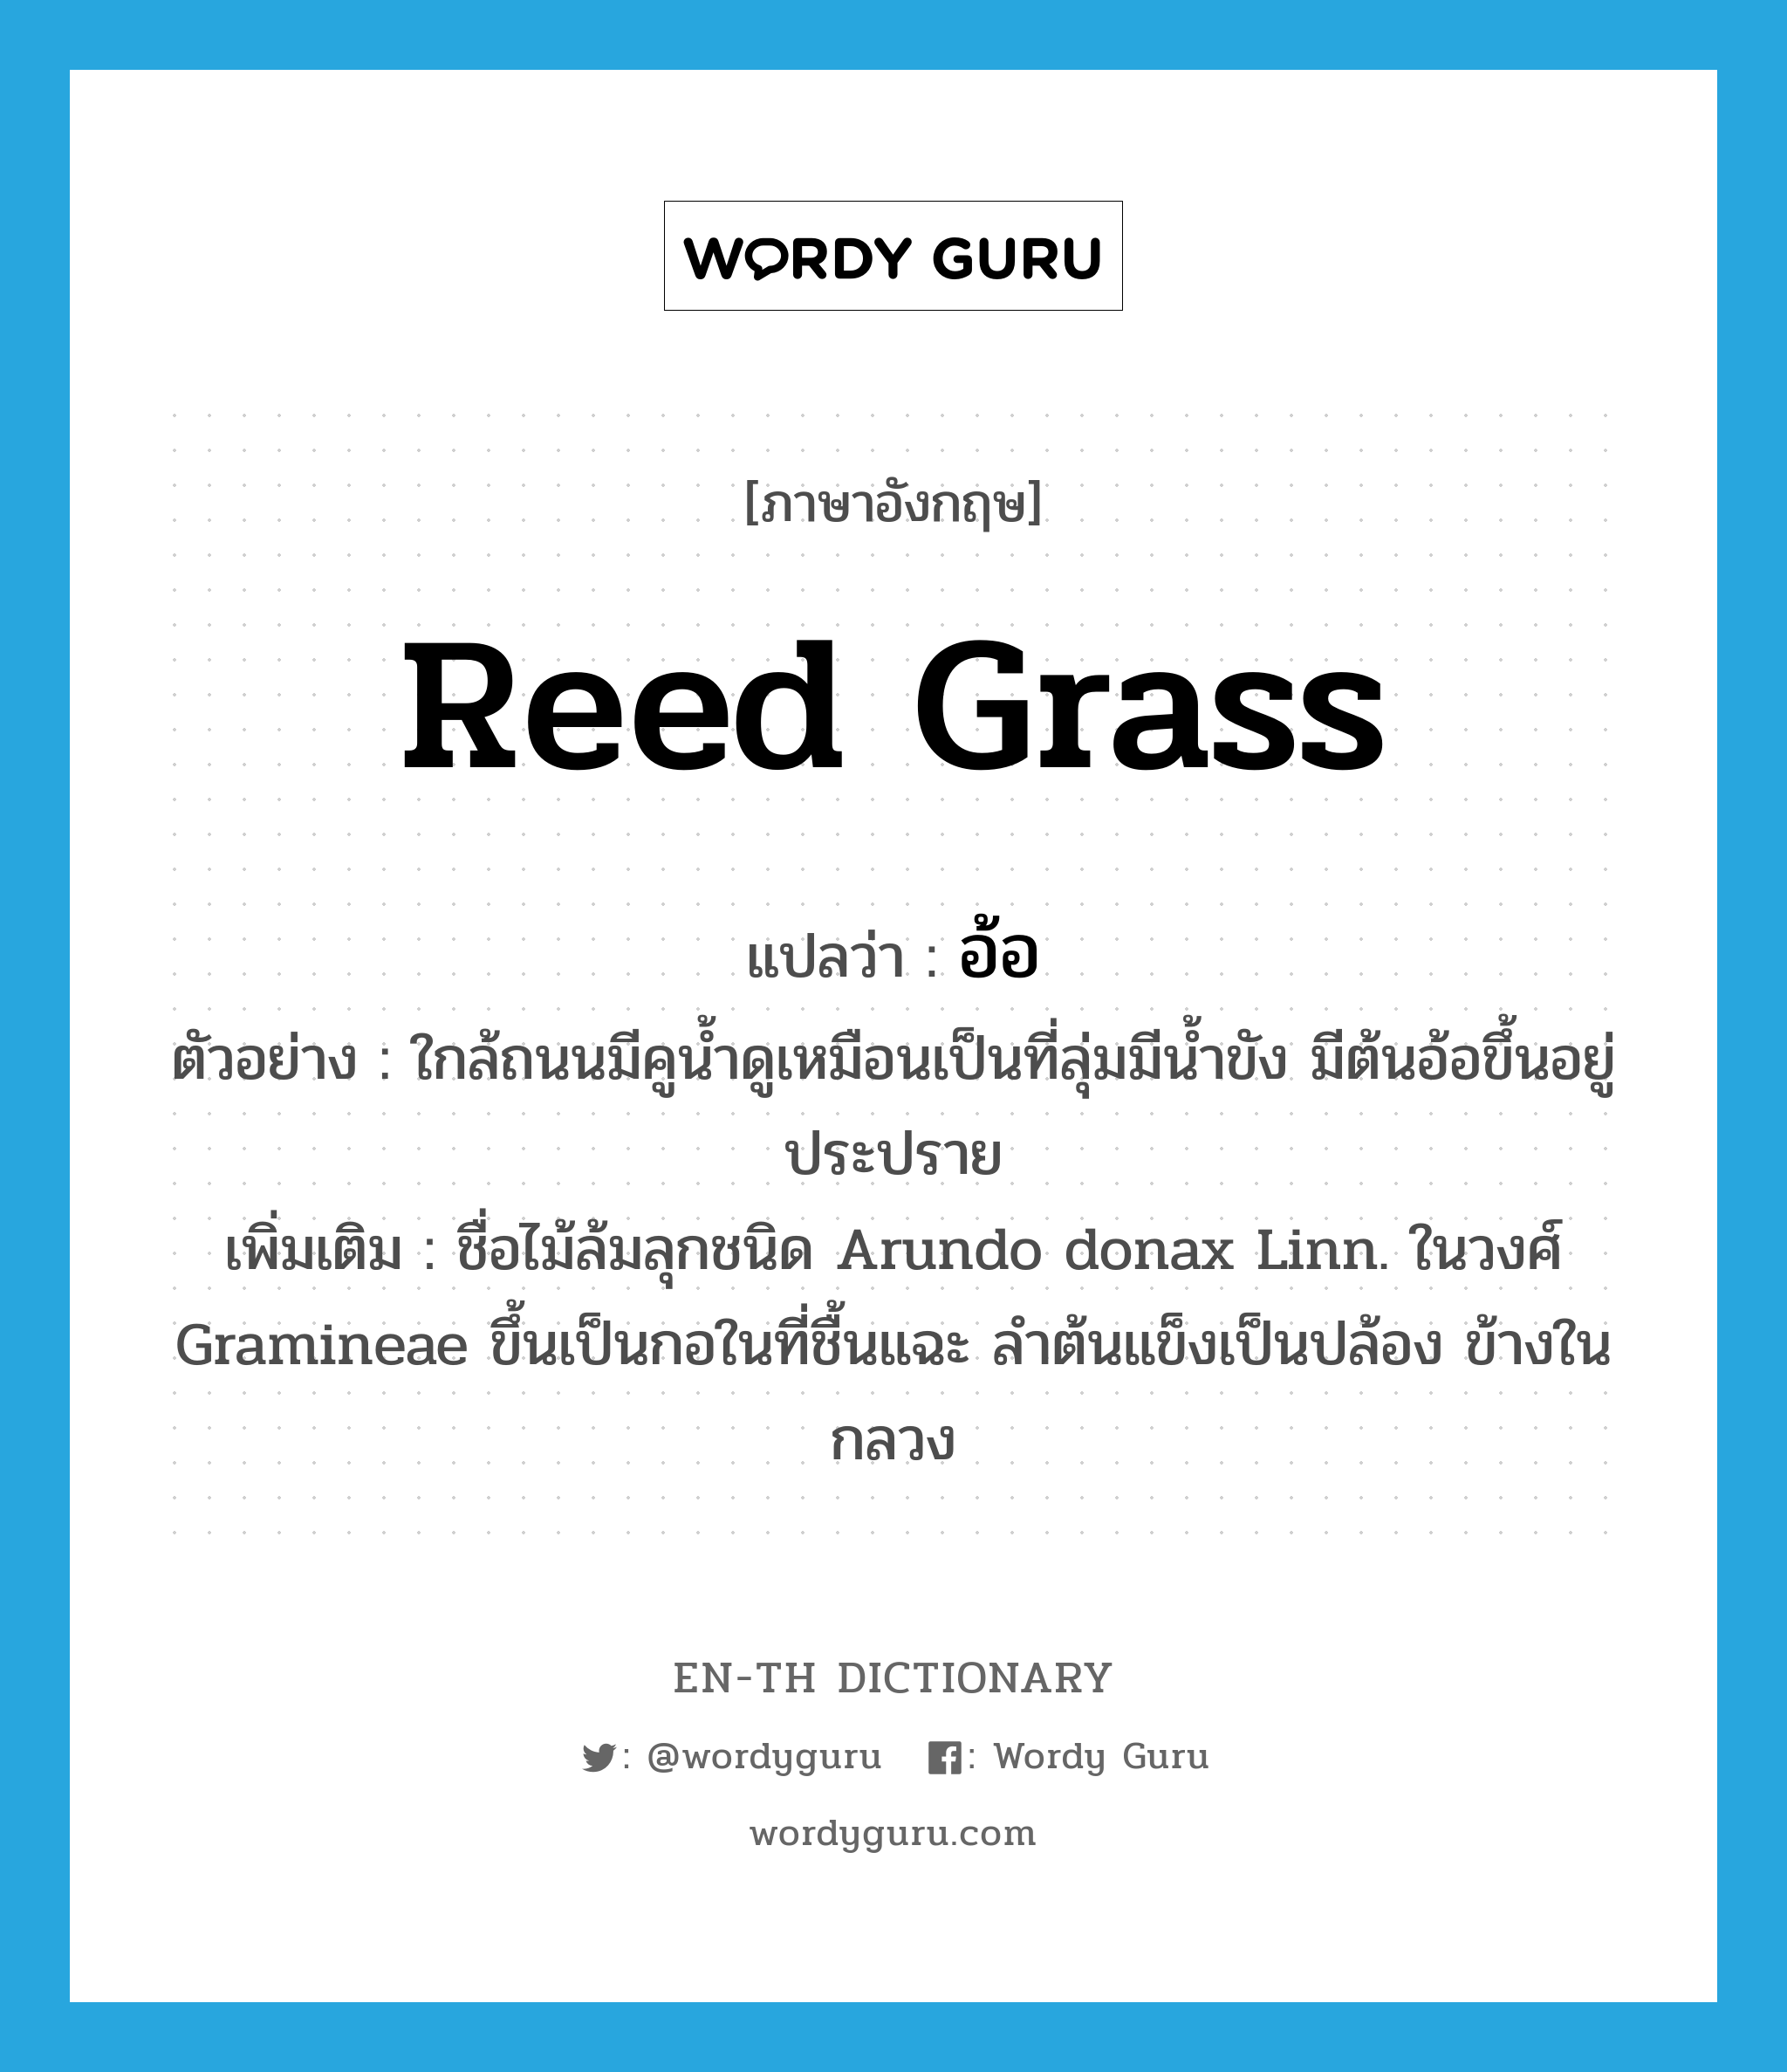 อ้อ ภาษาอังกฤษ?, คำศัพท์ภาษาอังกฤษ อ้อ แปลว่า reed grass ประเภท N ตัวอย่าง ใกล้ถนนมีคูน้ำดูเหมือนเป็นที่ลุ่มมีน้ำขัง มีต้นอ้อขึ้นอยู่ประปราย เพิ่มเติม ชื่อไม้ล้มลุกชนิด Arundo donax Linn. ในวงศ์ Gramineae ขึ้นเป็นกอในที่ชื้นแฉะ ลำต้นแข็งเป็นปล้อง ข้างในกลวง หมวด N